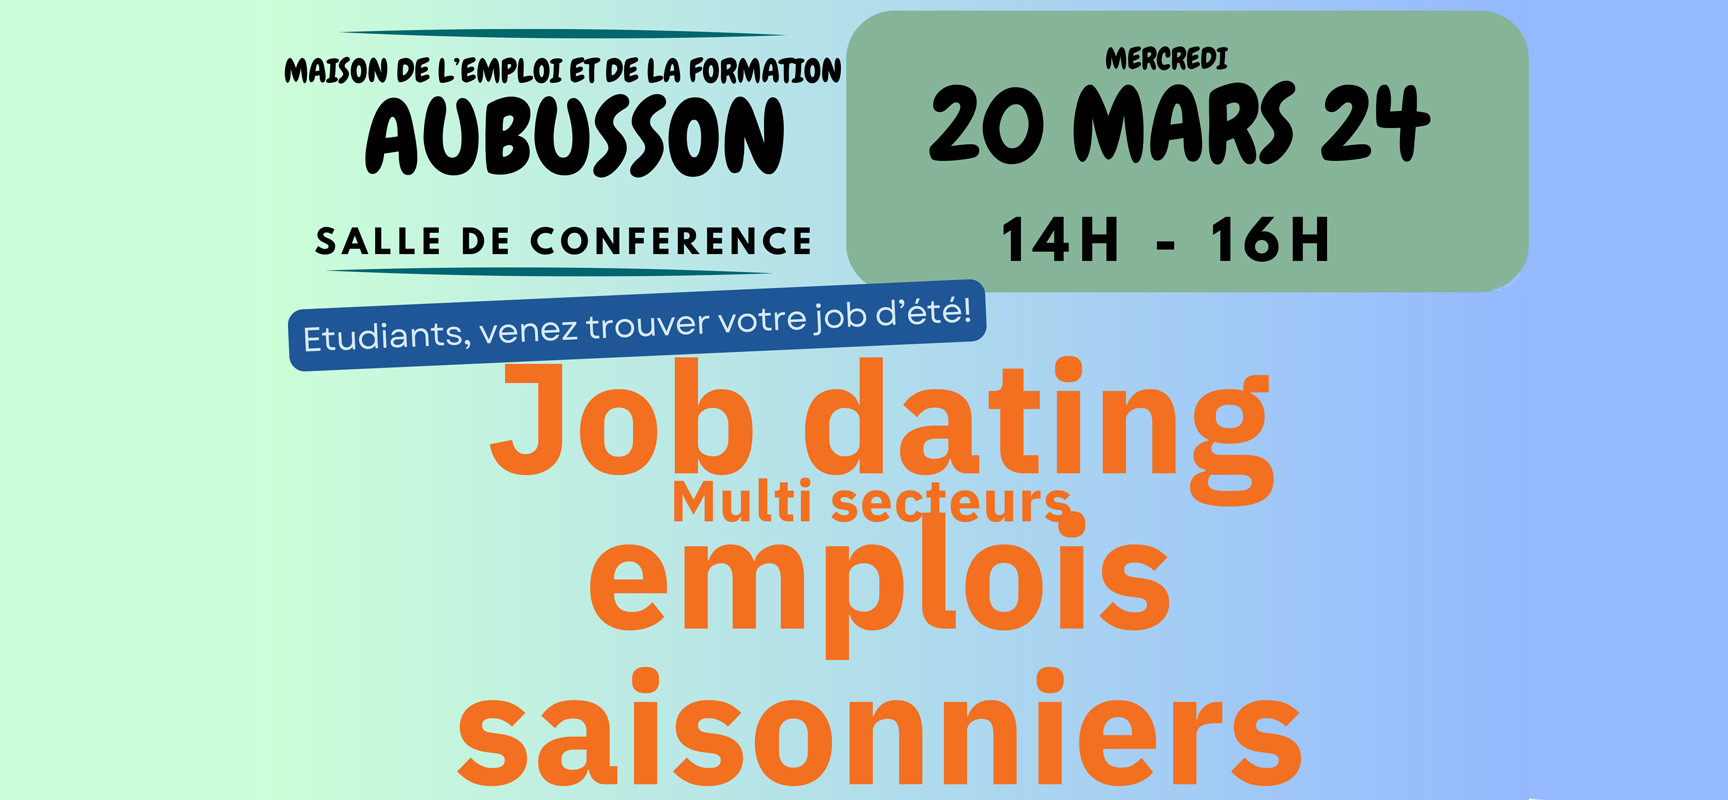 Job dating emplois saisonniers – mercredi 20 mars 2024 de 14h à 16h – Aubusson